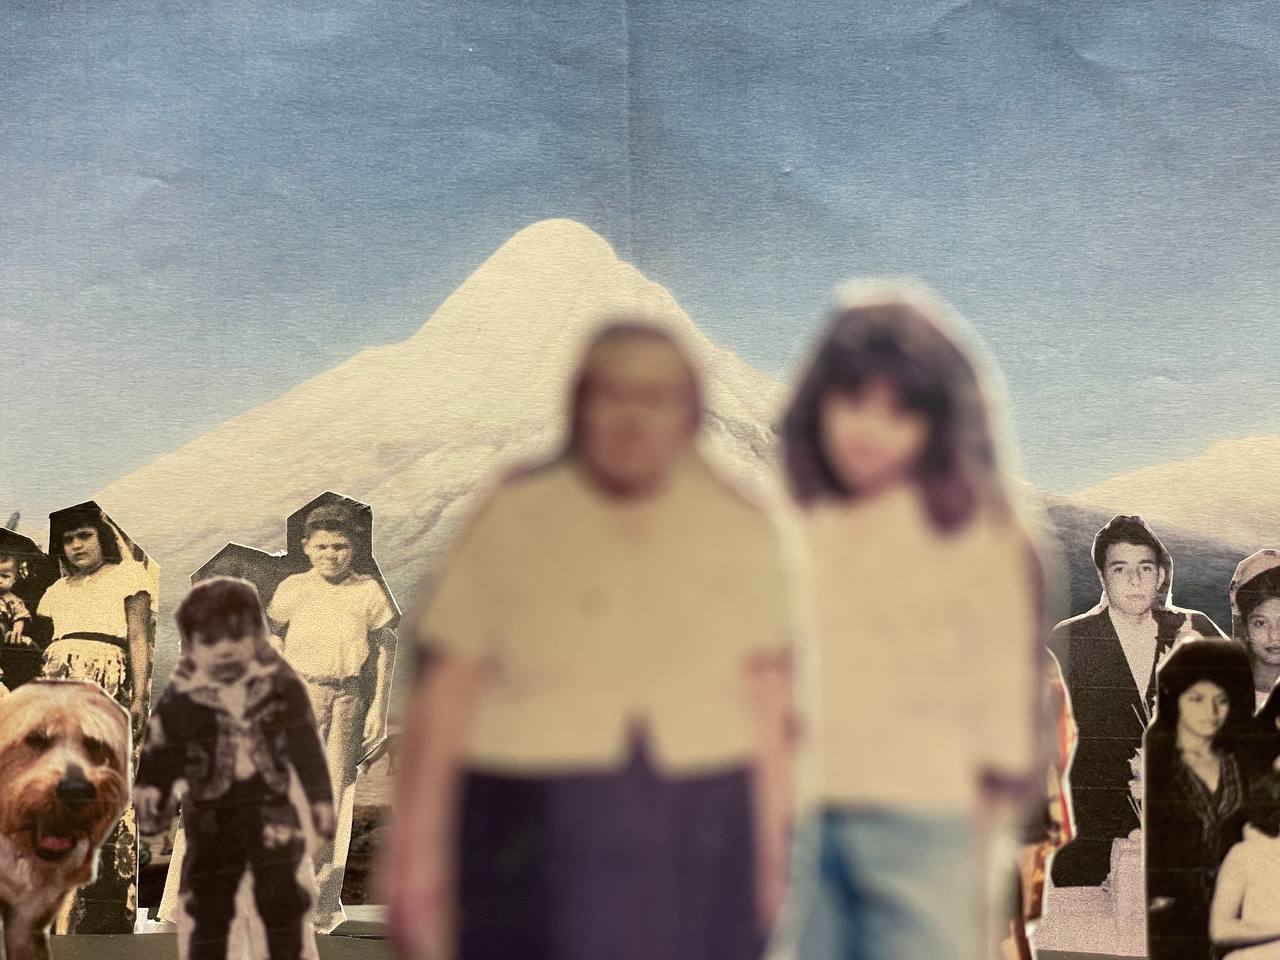 Das Bild zeigt eine Papiercollage, auf der ausgeschnittene Fotografien von acht Personen verschiedenen Alters und einem Hund zu sehen sind. Die zwei Personen im Vordergrund sind unscharf. Den Hintergrund bildet ein schneebedeckter Berg.